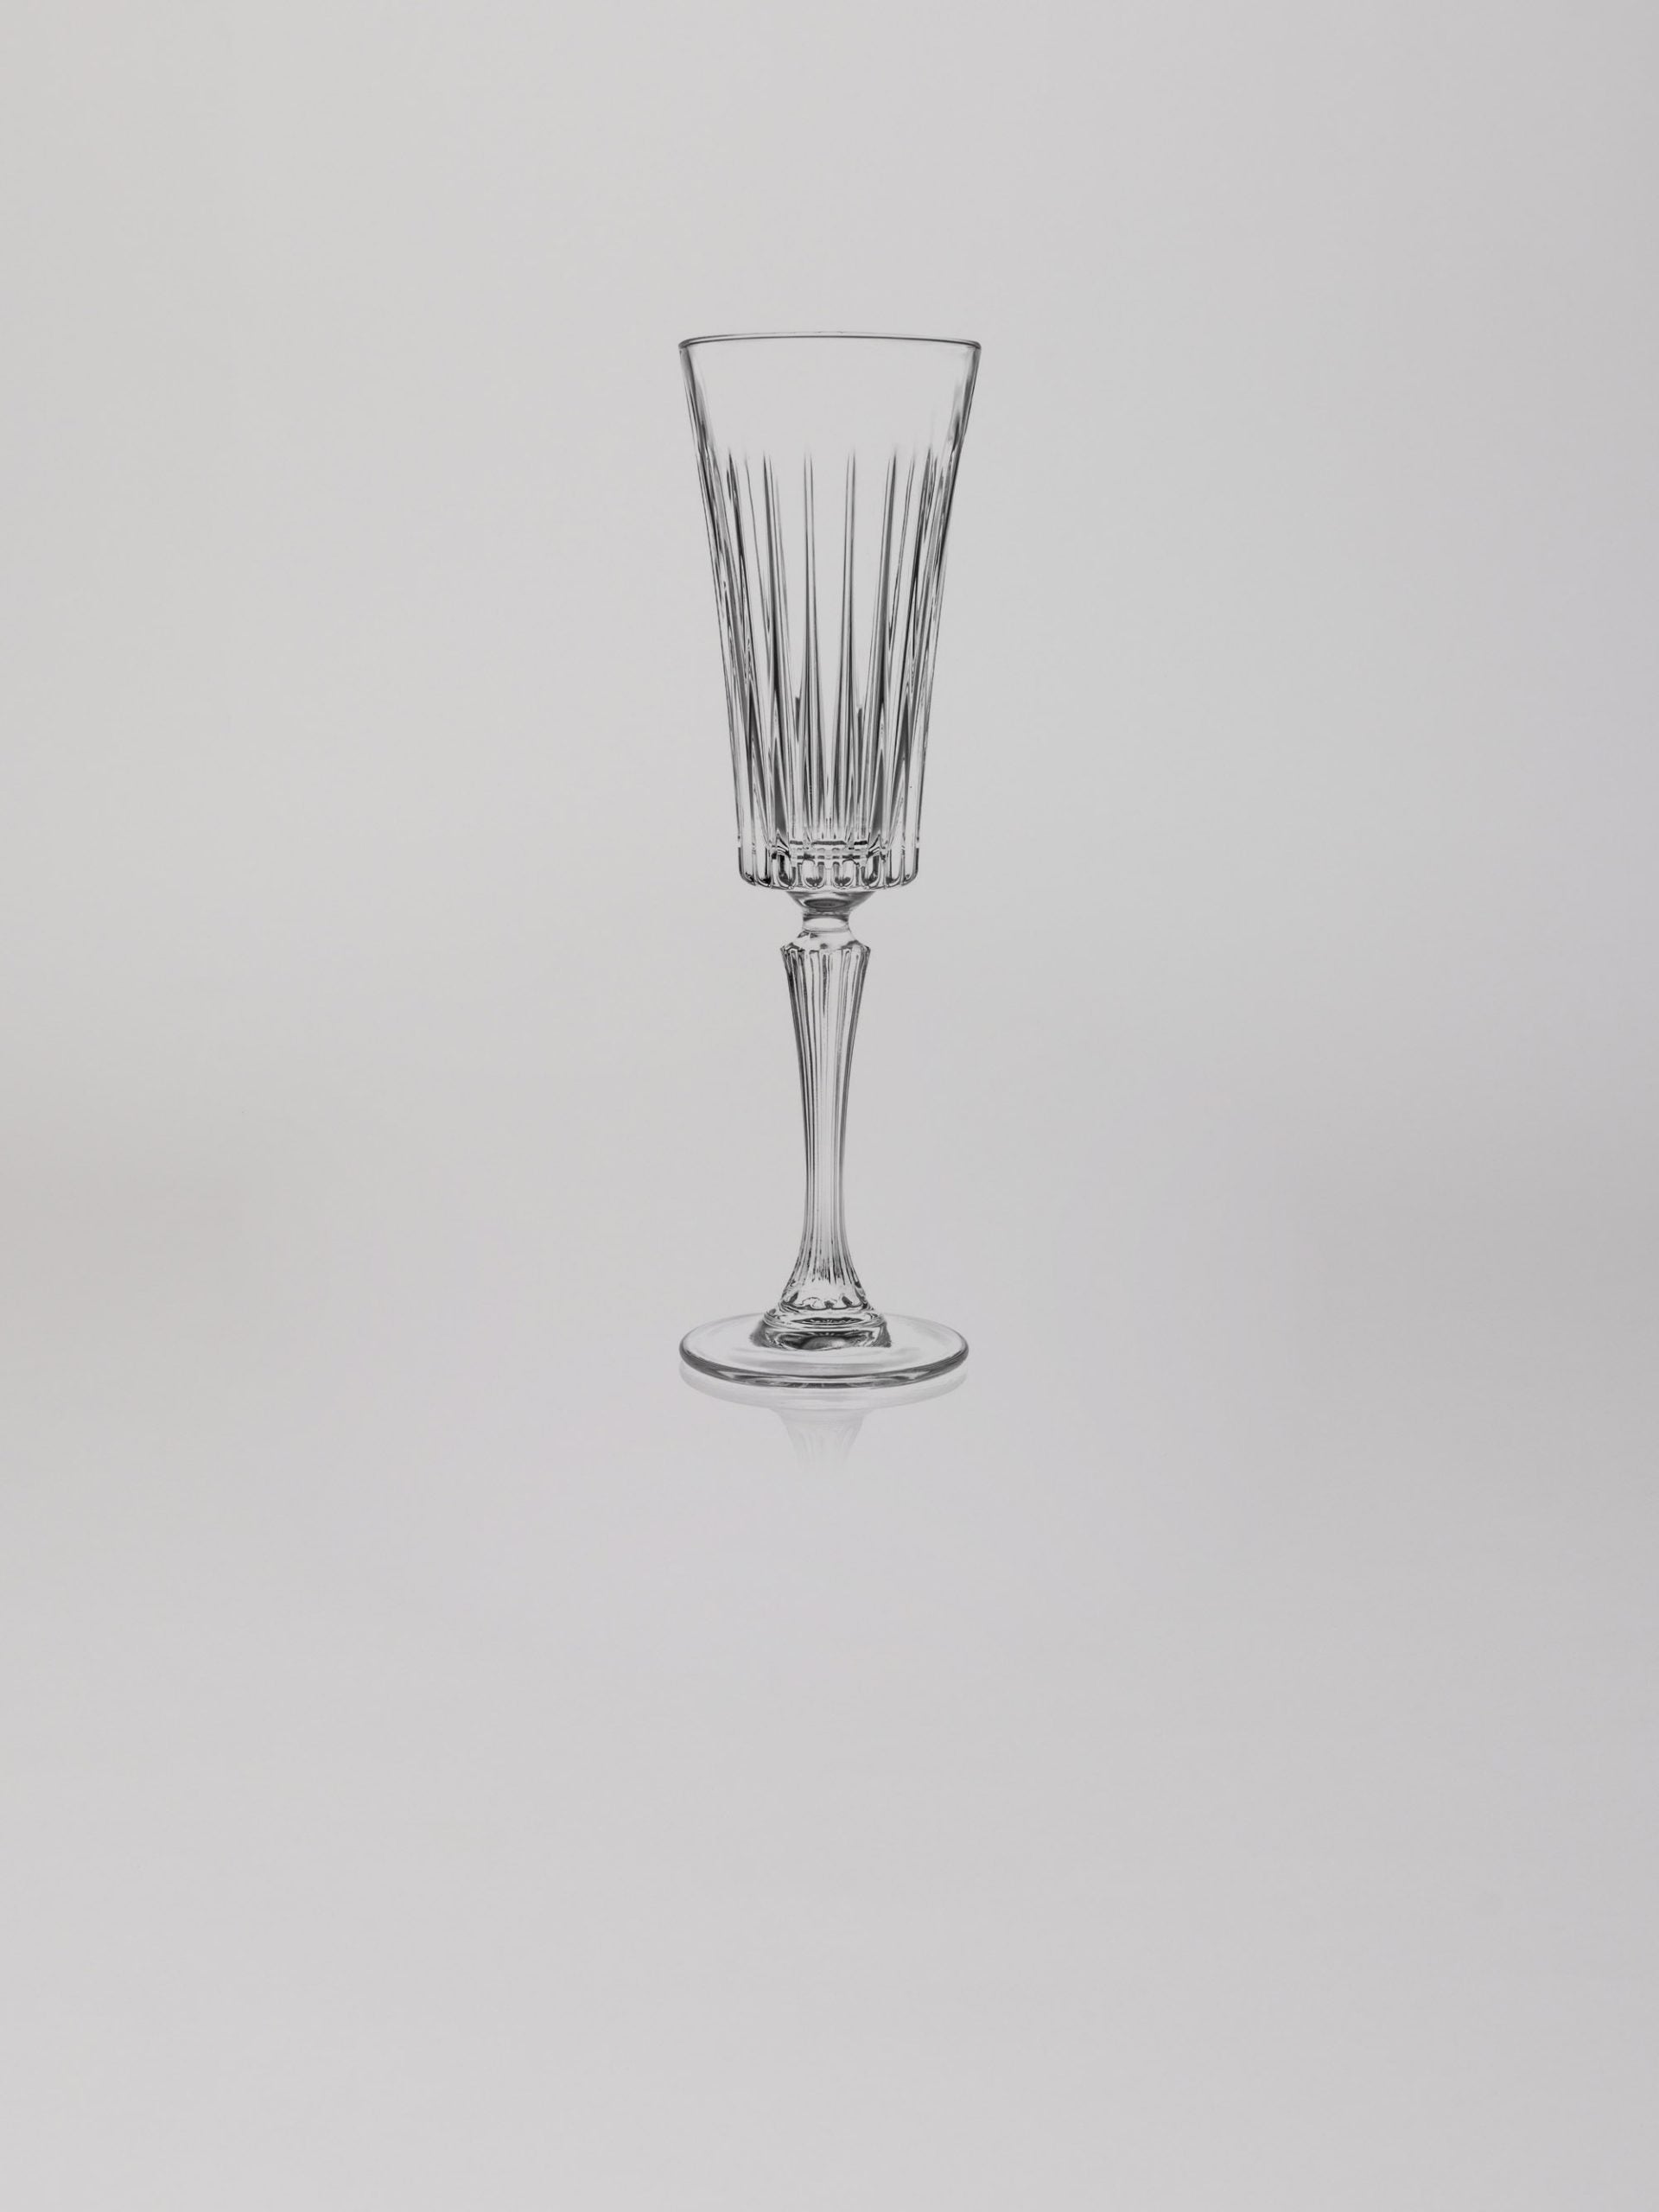  כוס שמפניה גבוהה טיימלאס על רקע אפור